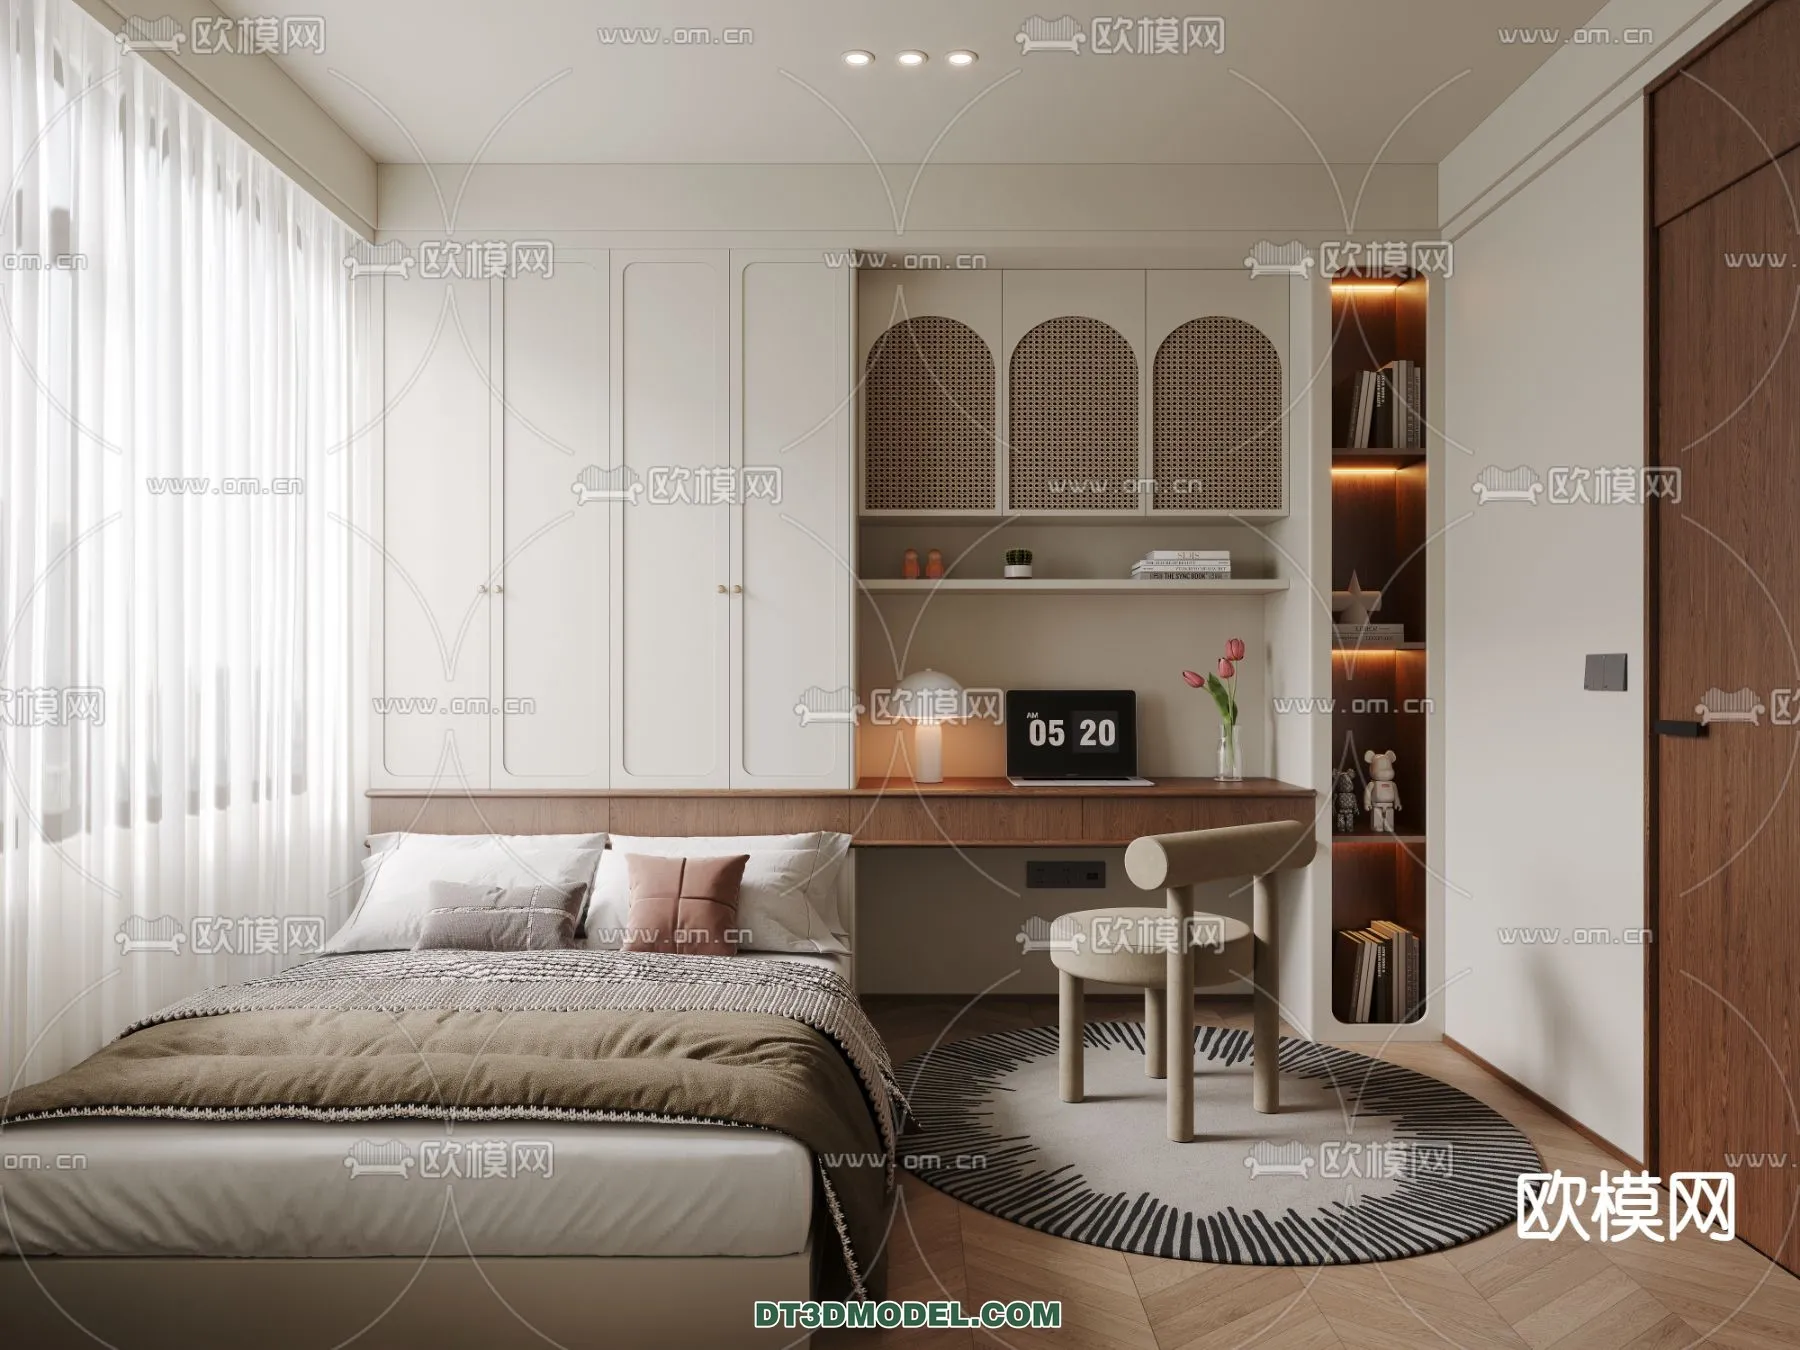 Tatami Bedroom – Japan Bedroom – 3D Scene – 008